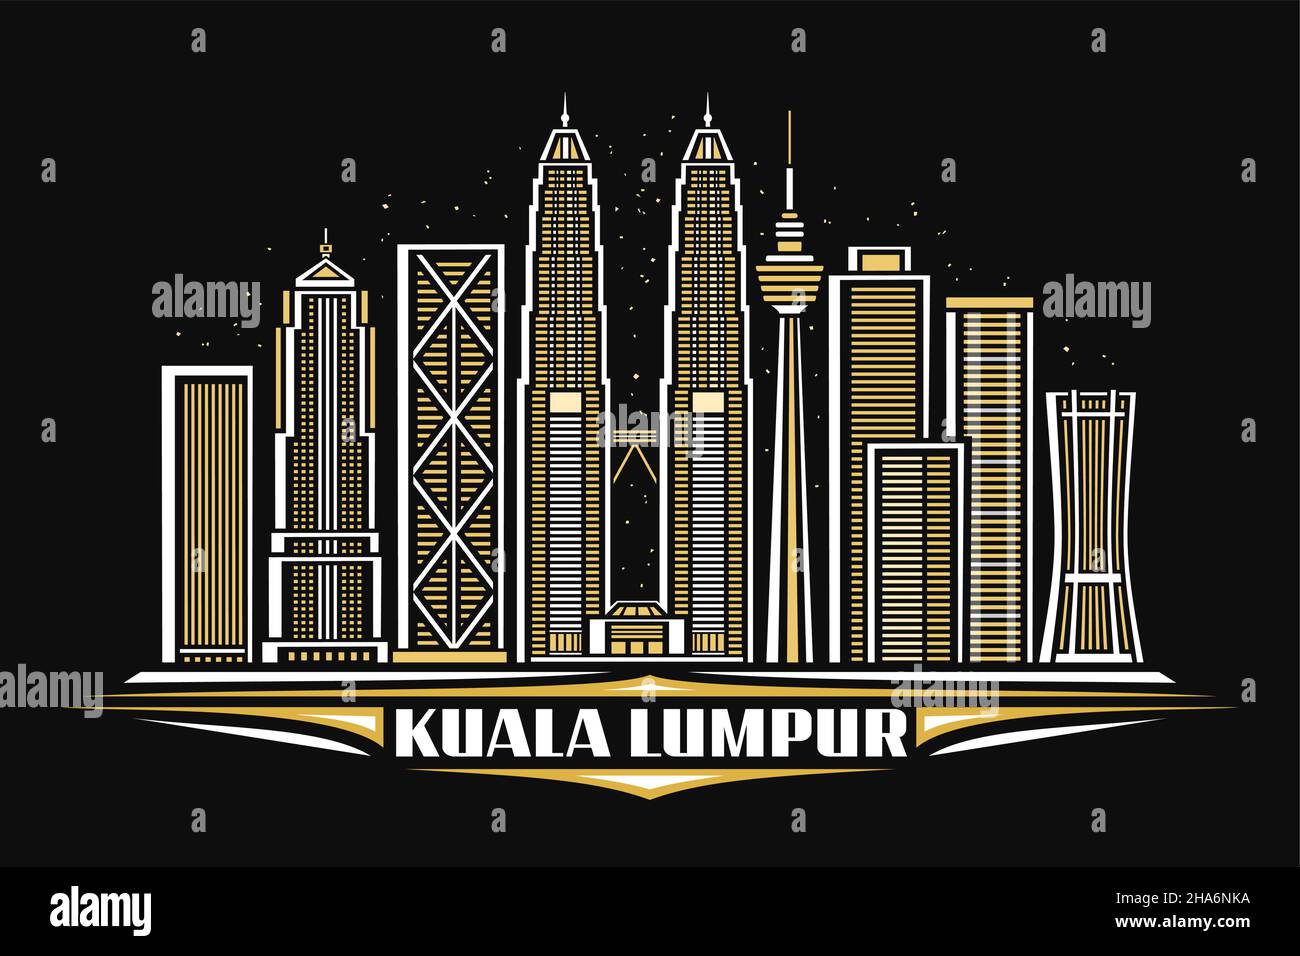 Illustration vectorielle de Kuala Lumpur, poster horizontal foncé avec design linéaire célèbre paysage urbain sur fond de ciel crépuscule, concept d'art urbain asiatique Illustration de Vecteur